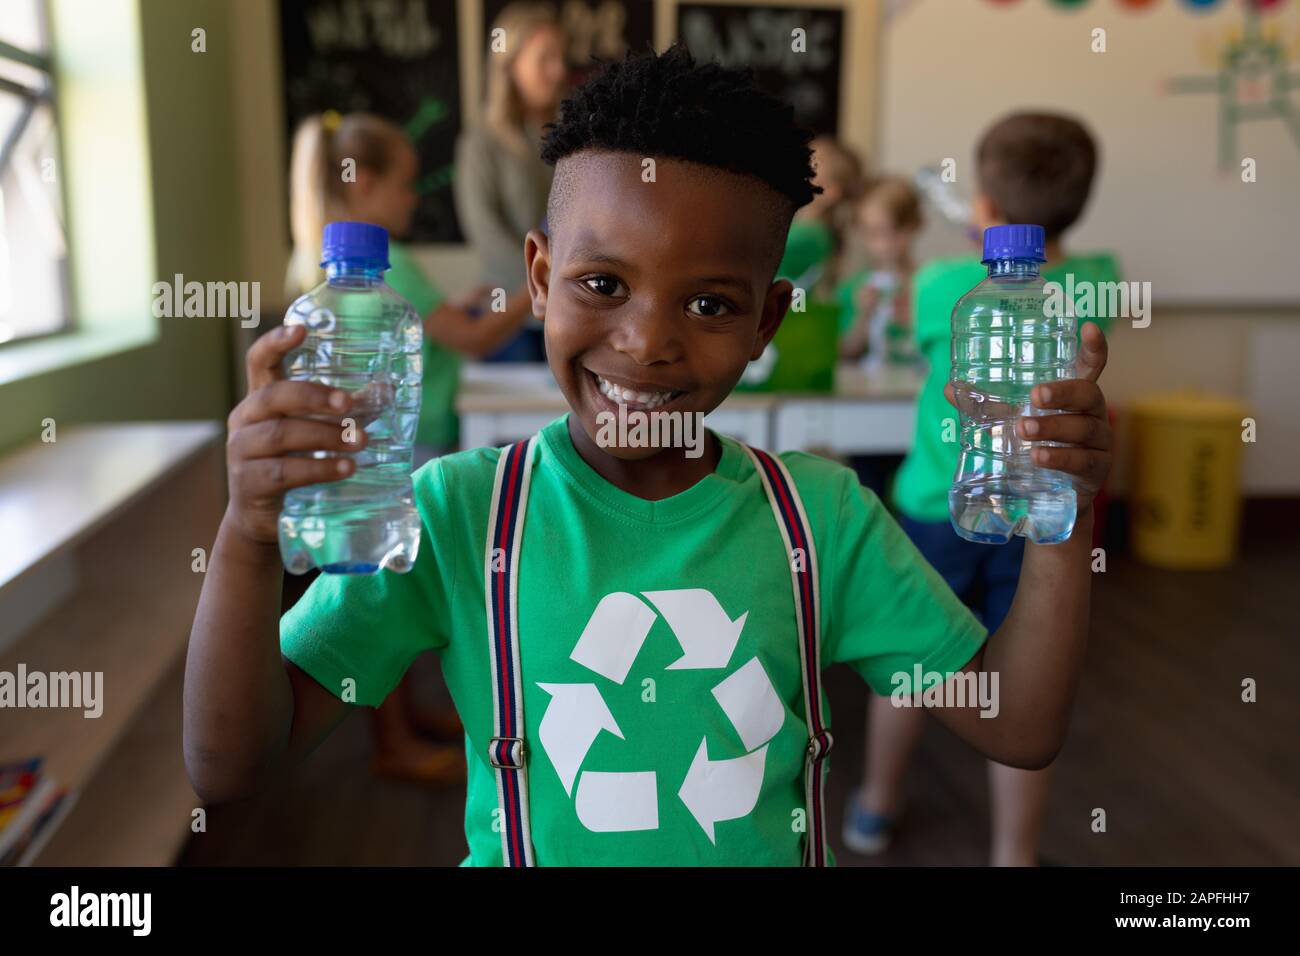 Niño escolar que lleva una camiseta verde con un logotipo de reciclaje blanco en ella y que sostiene dos aguas de plástico bo Foto de stock